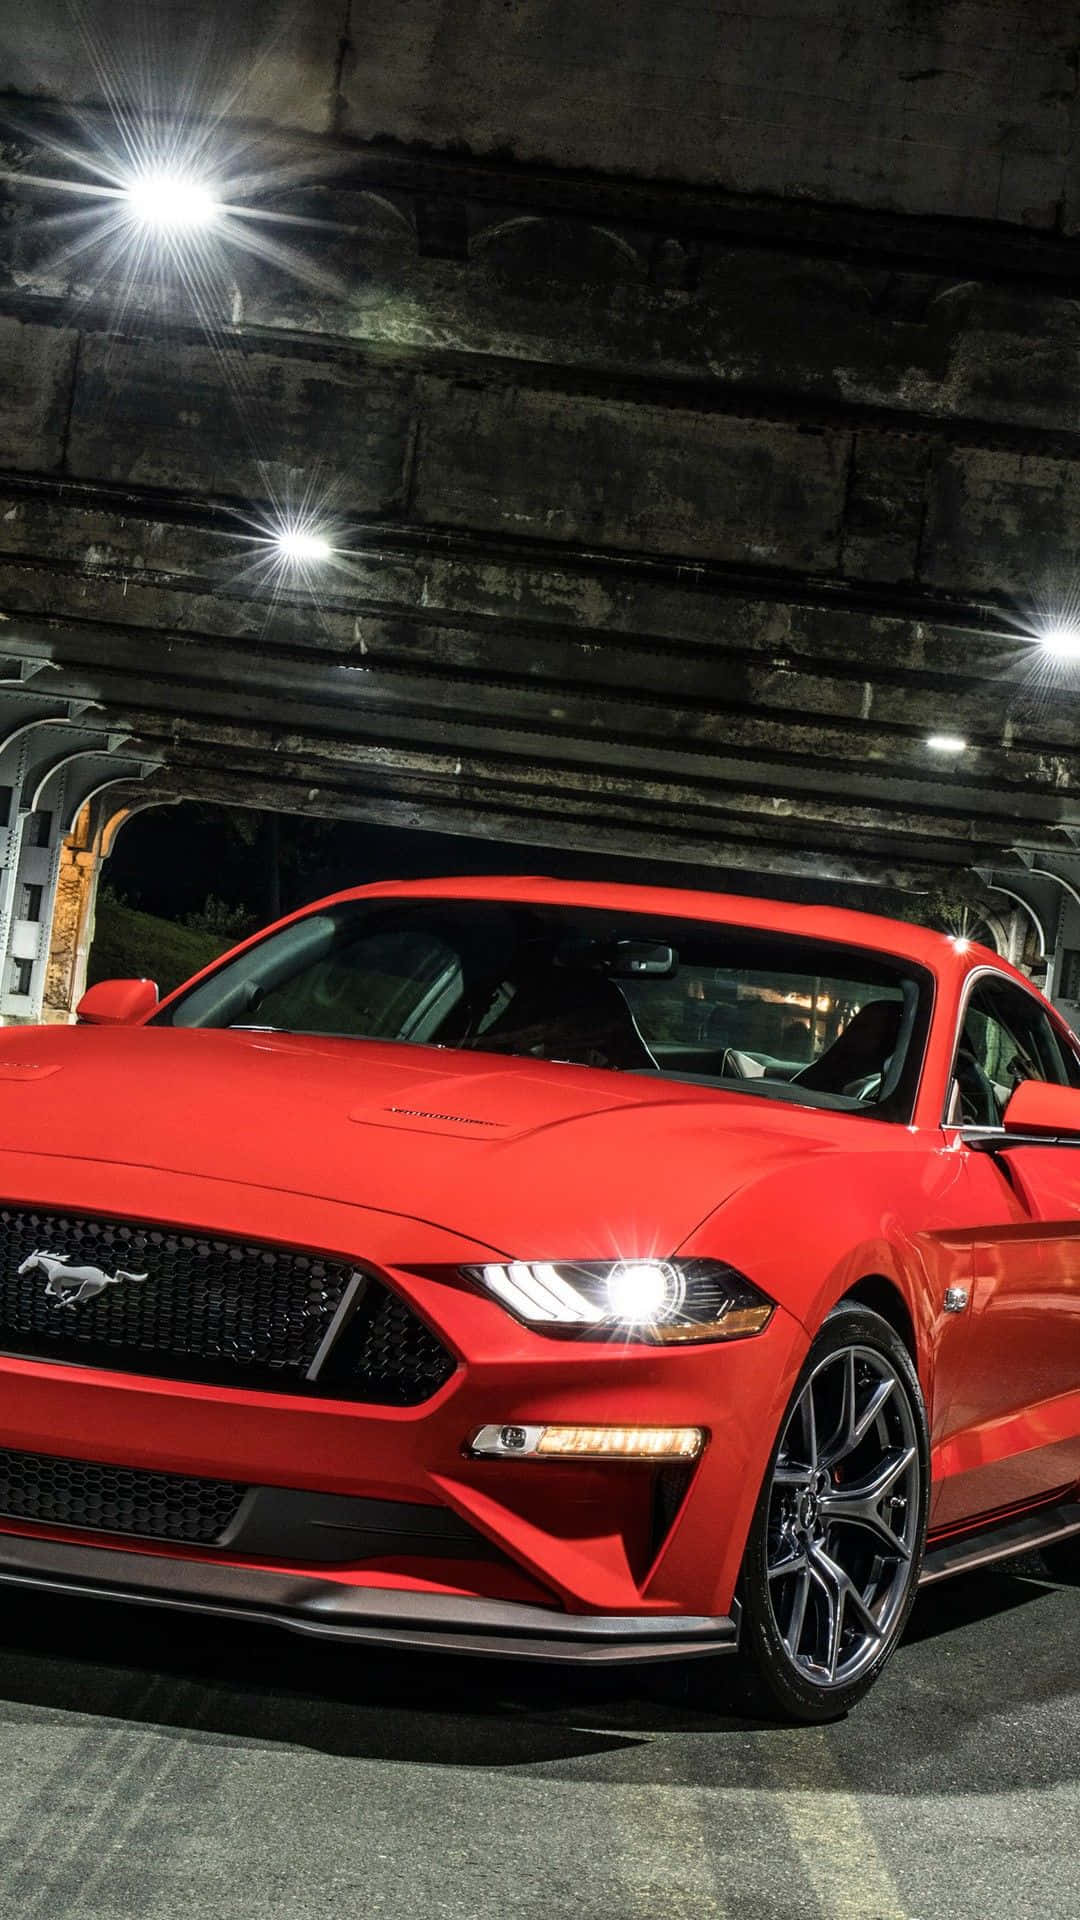 Derrote 2019 Ford Mustang Gt Steht In Einem Tunnel. Wallpaper